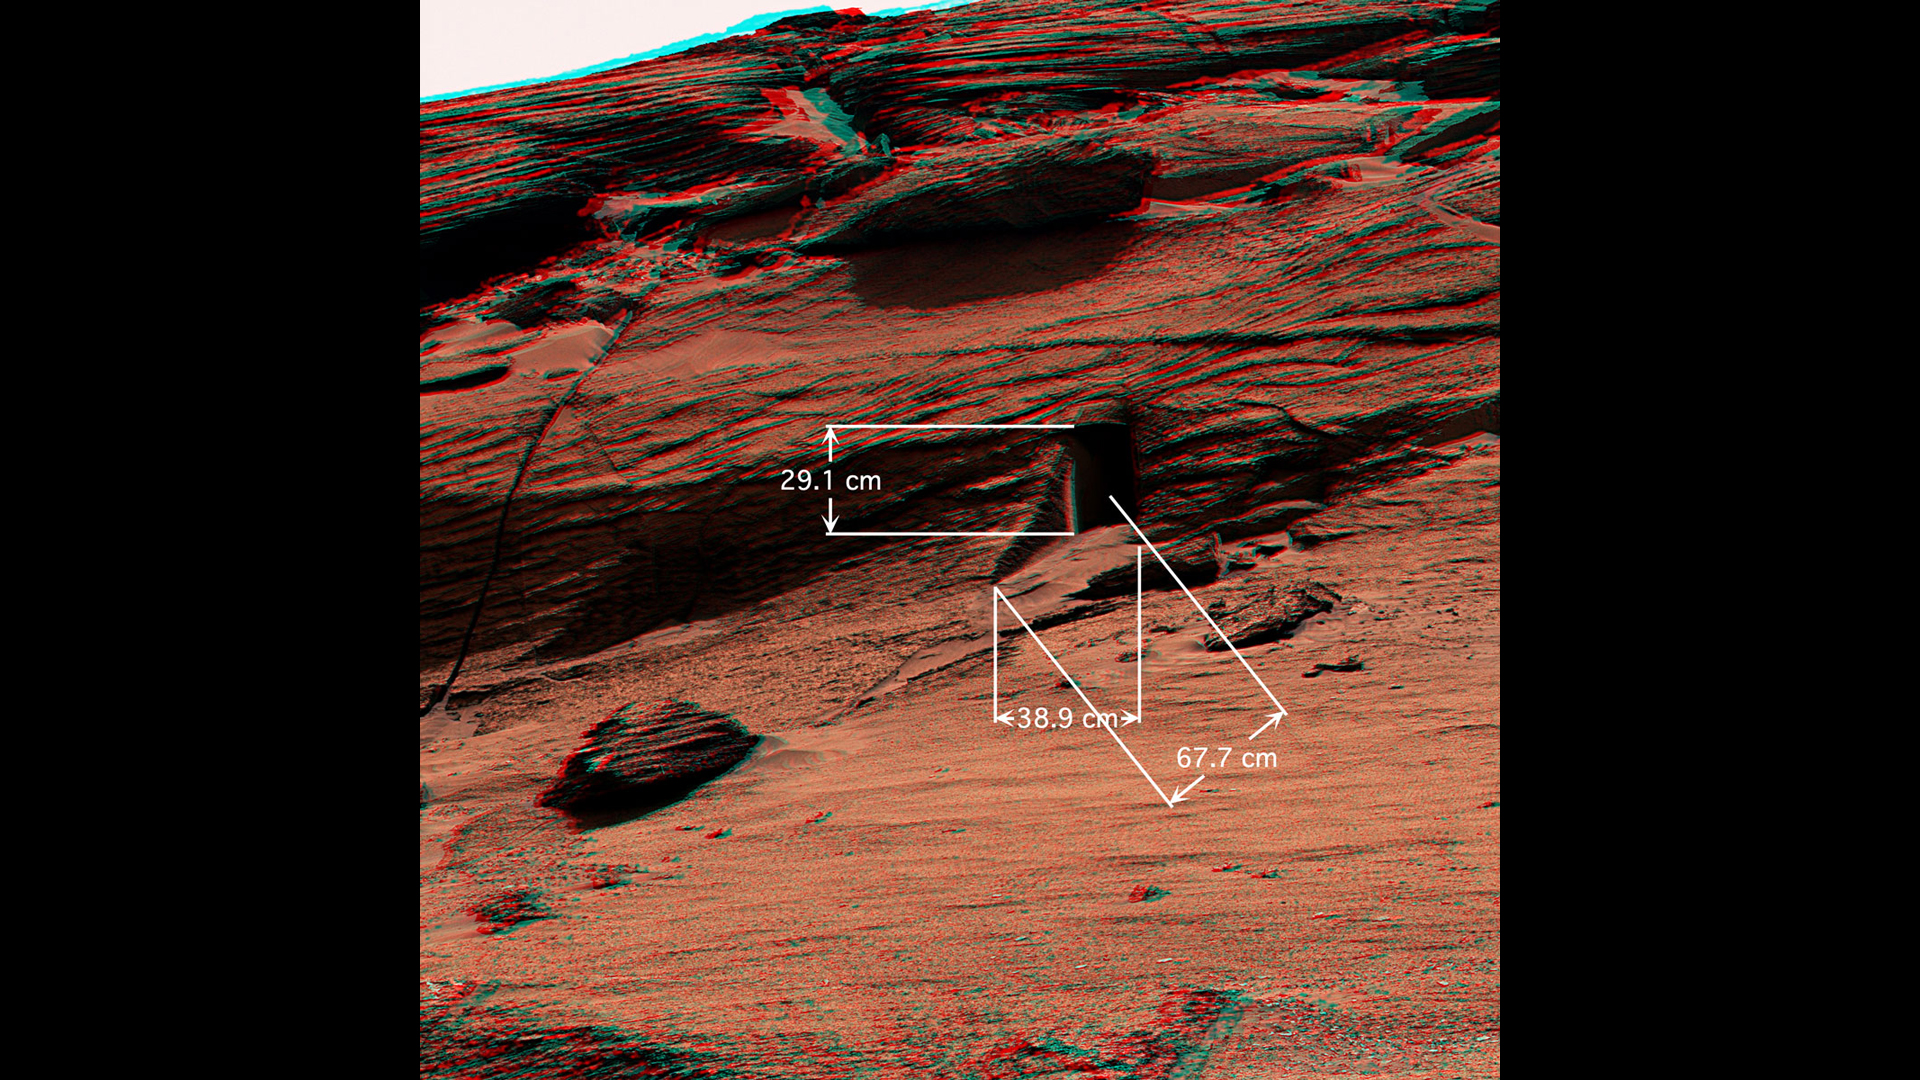 سميت ميزة غريبة "باب الكلب" تم اكتشافه على سطح المريخ بواسطة مركبة Curiosity التابعة لوكالة ناسا